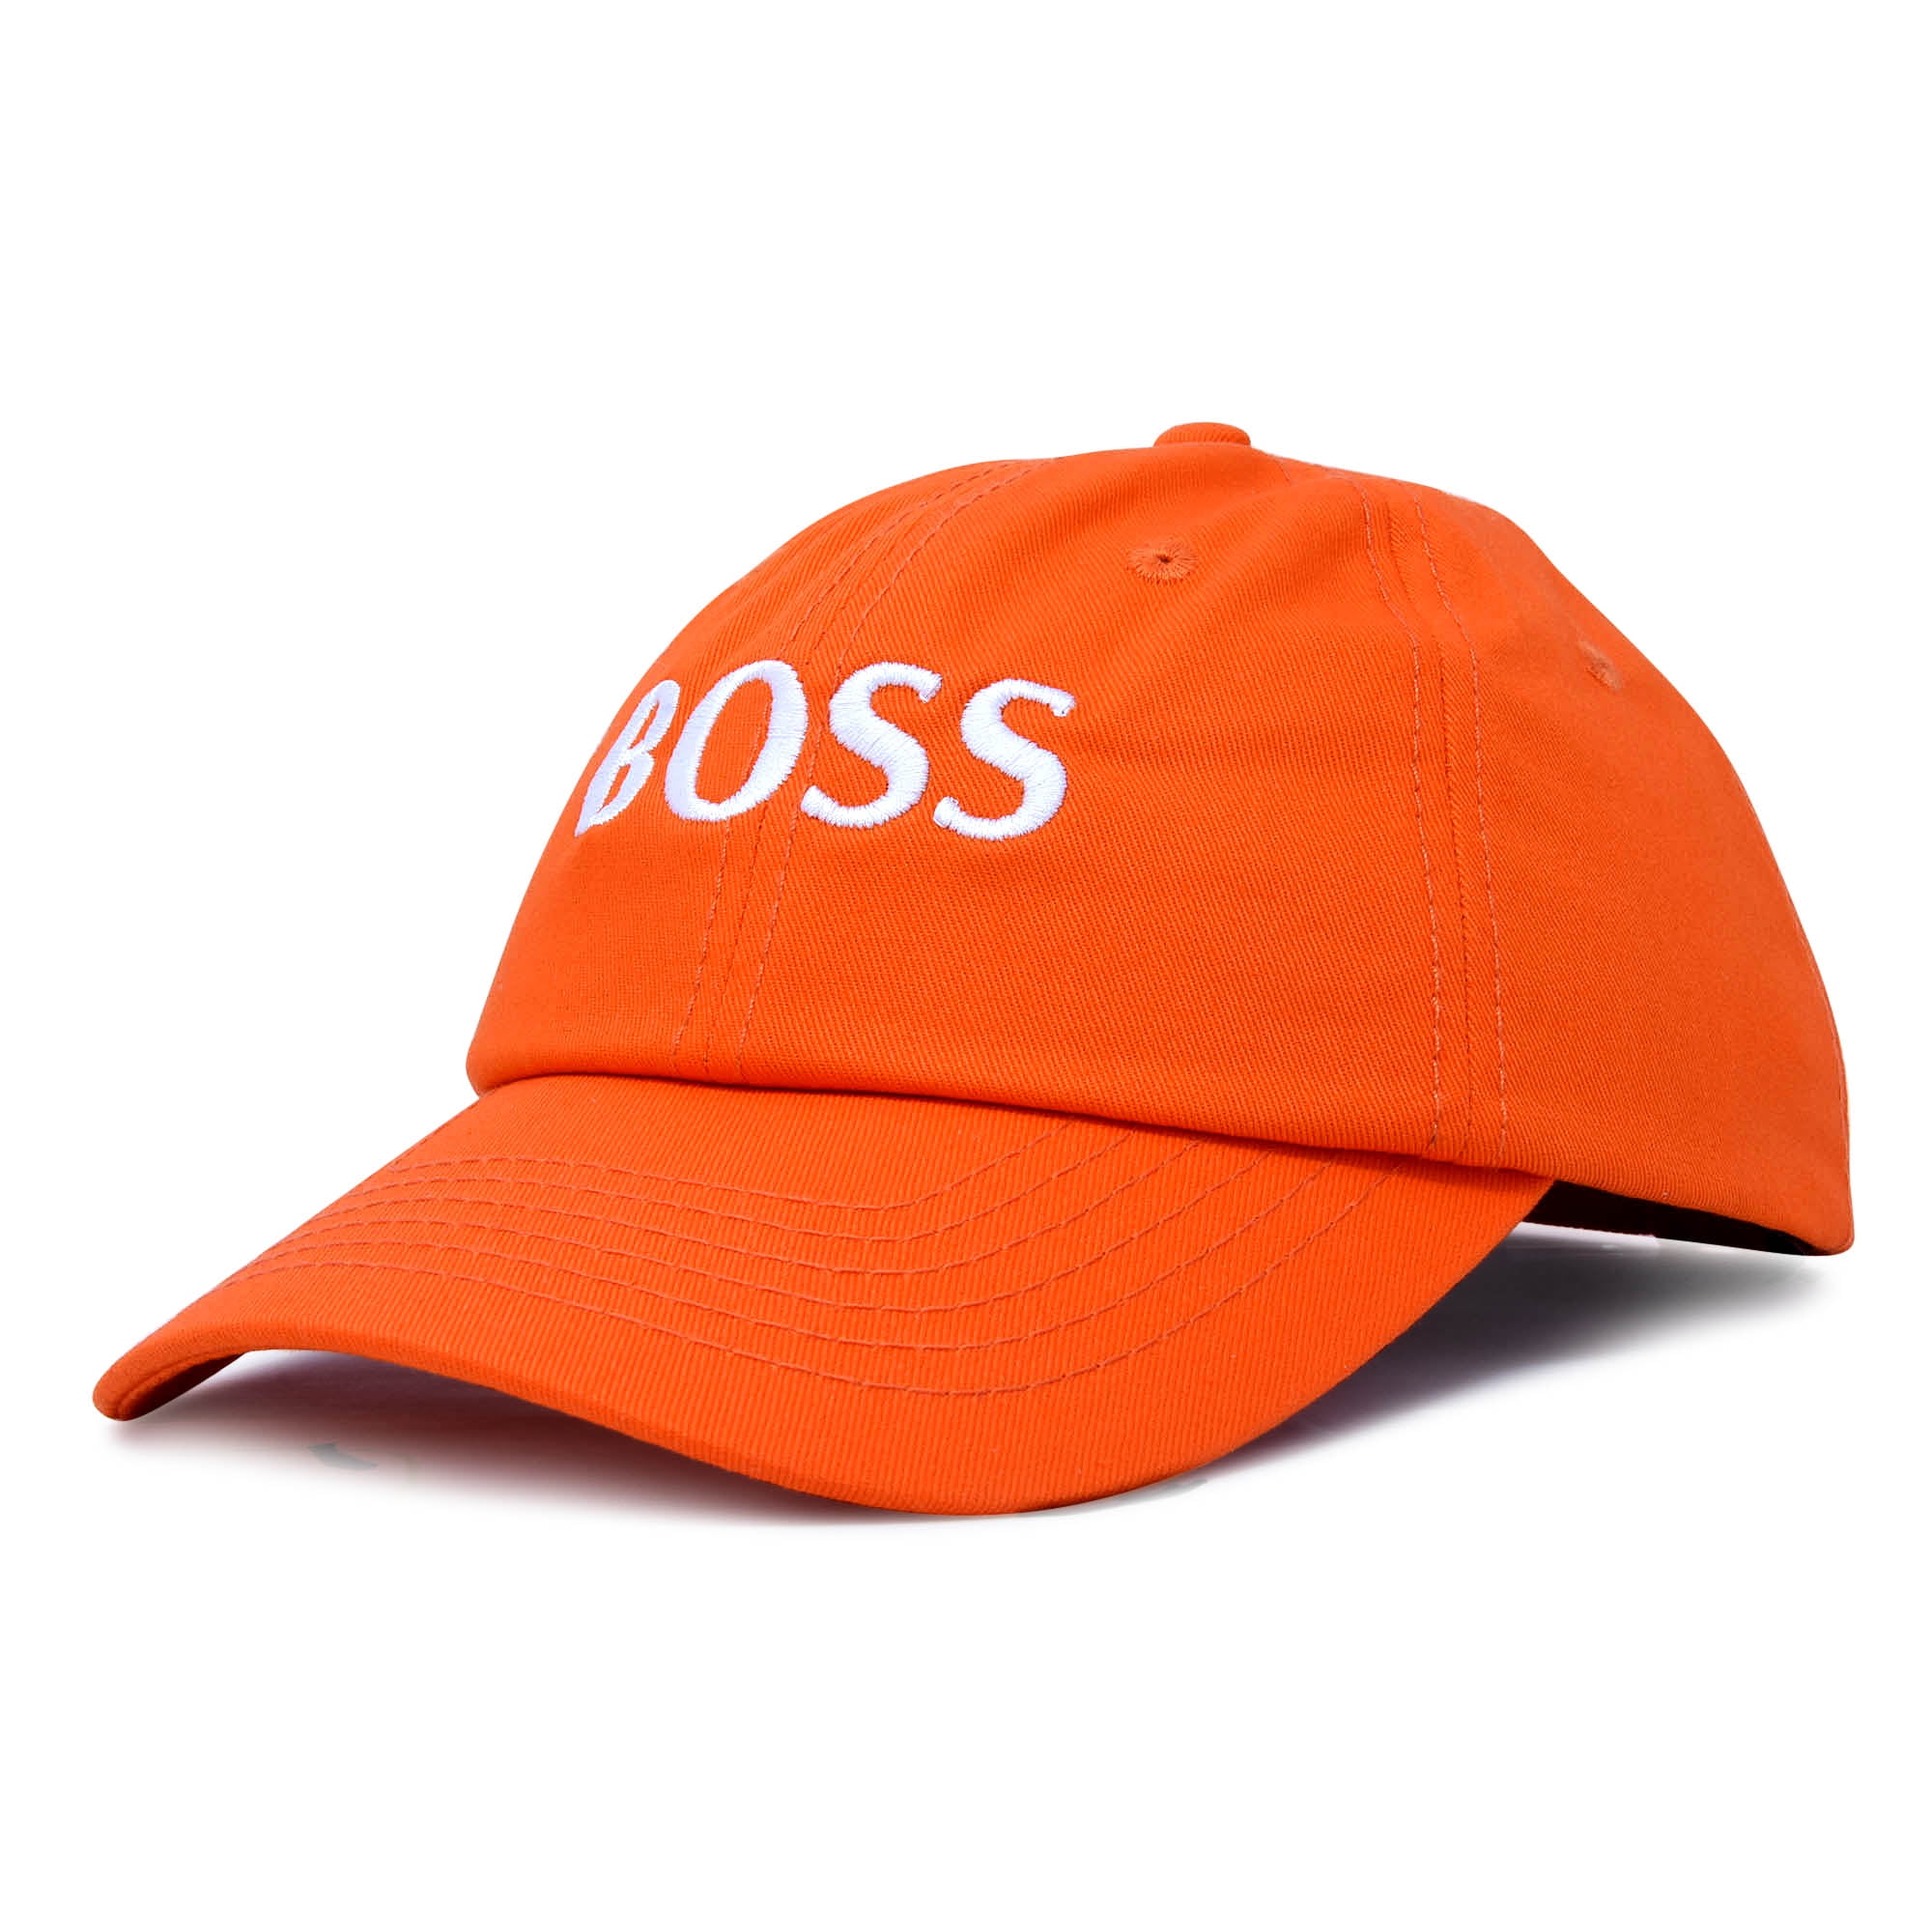 boss orange cap